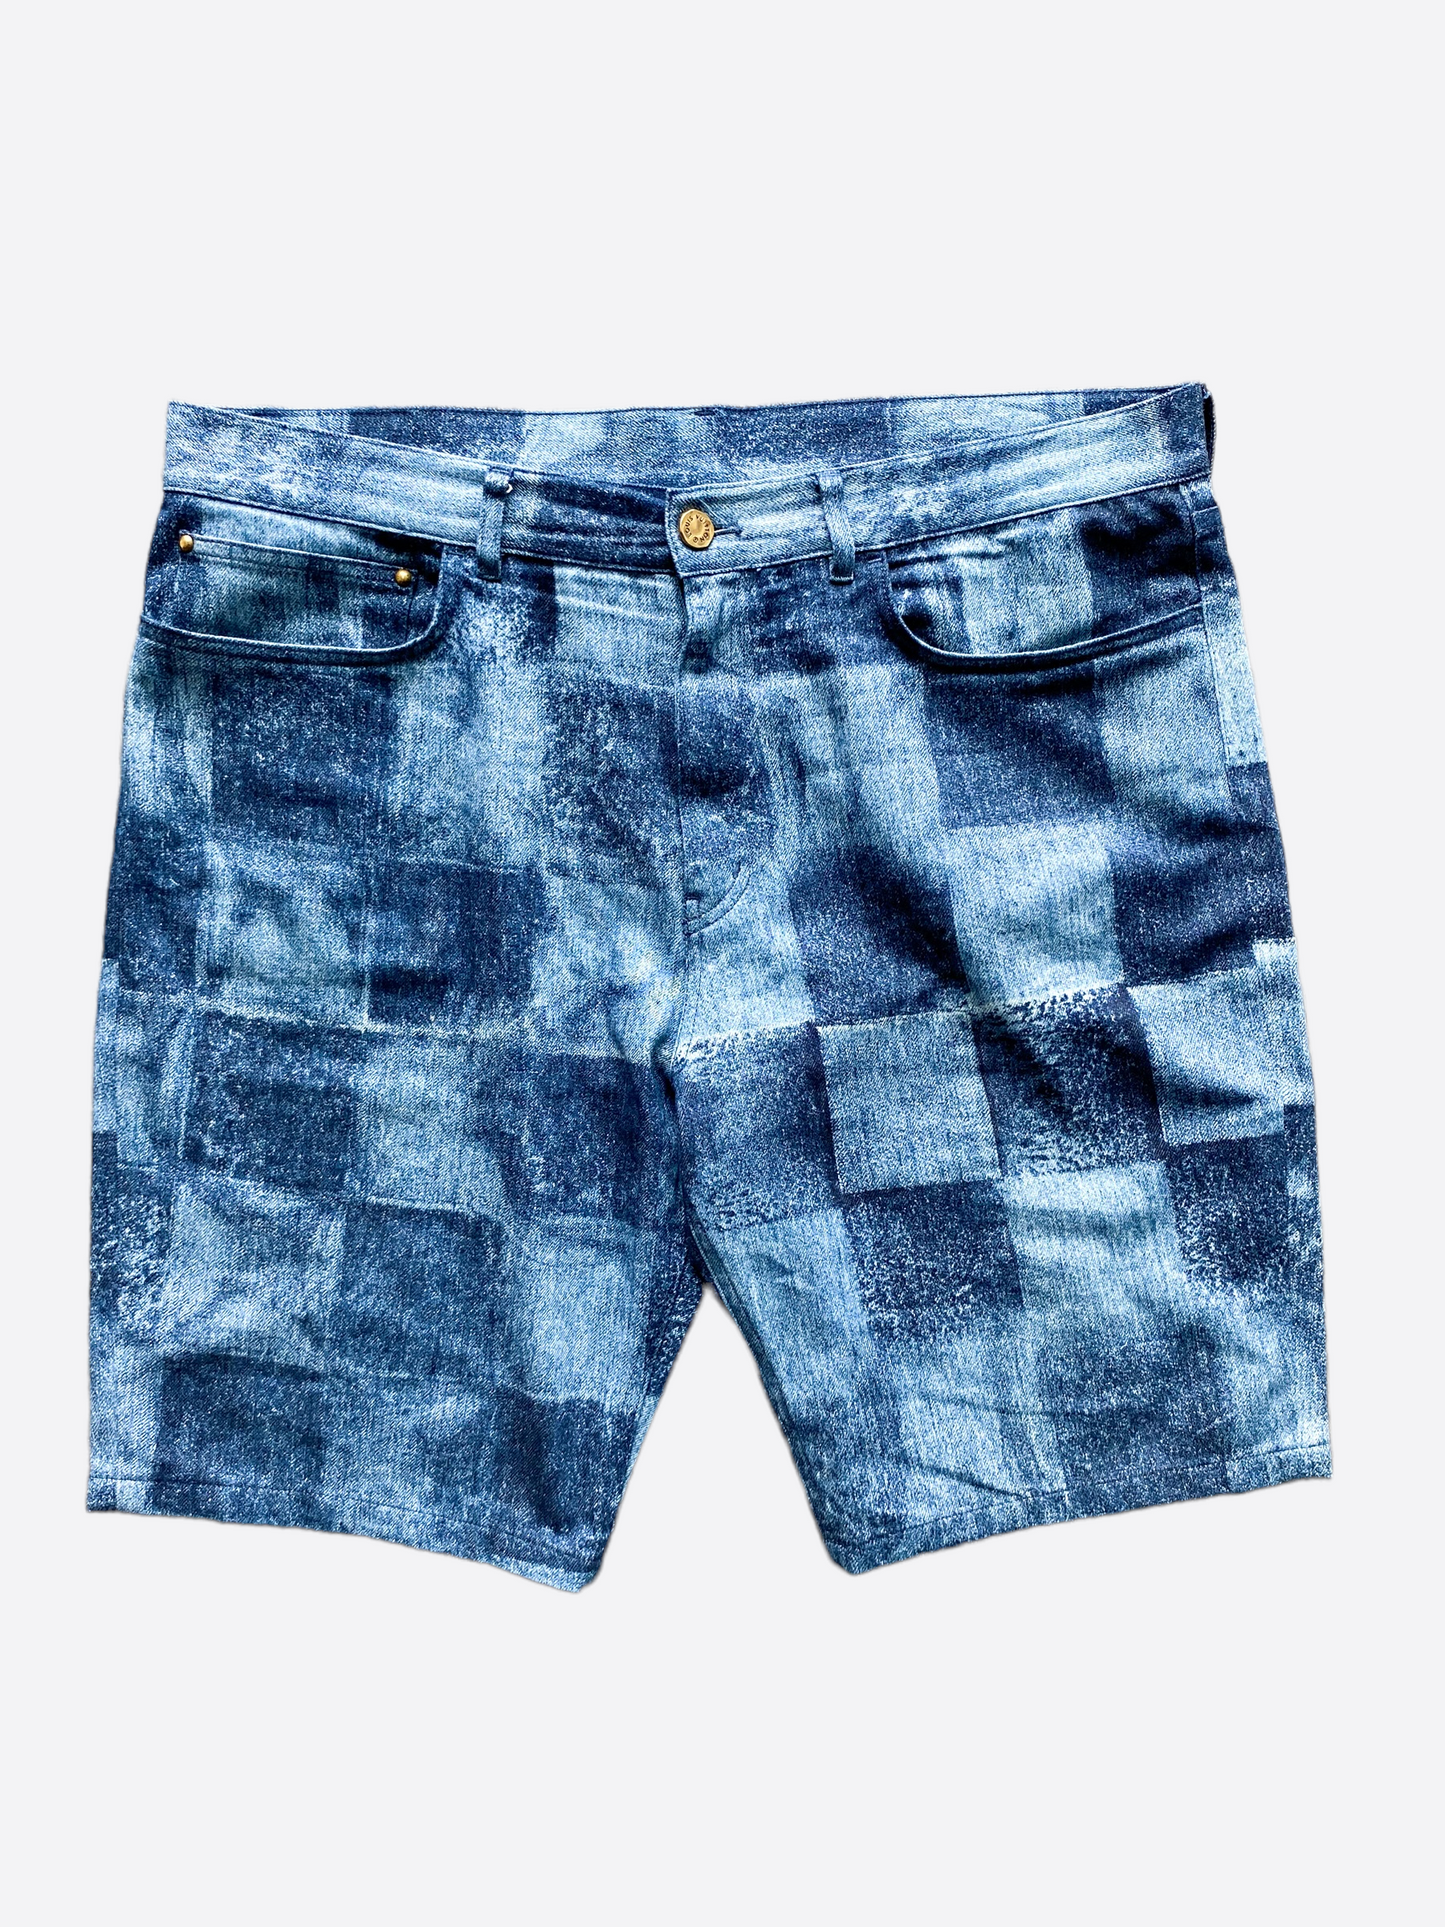 lv print shorts for men